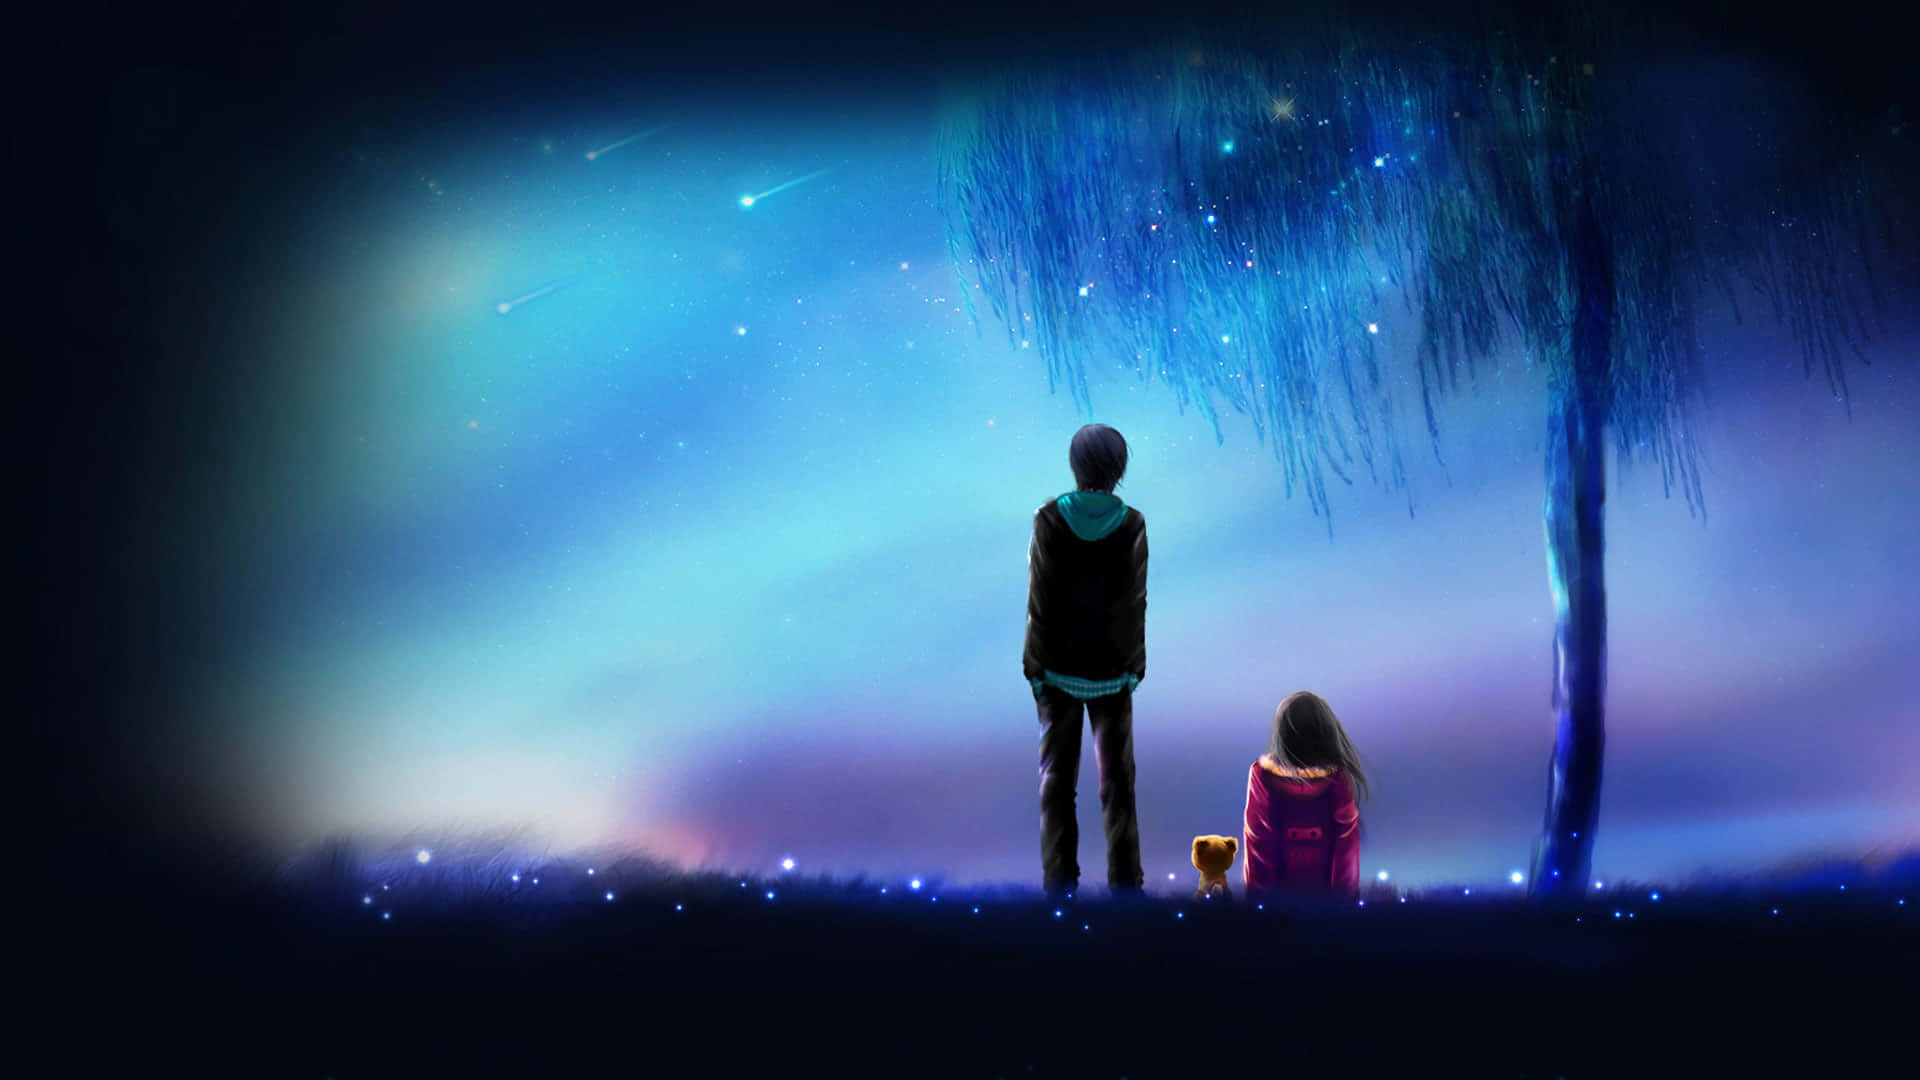 Parejade Anime Mirando Hacia El Cielo Nocturno De Anime. Fondo de pantalla